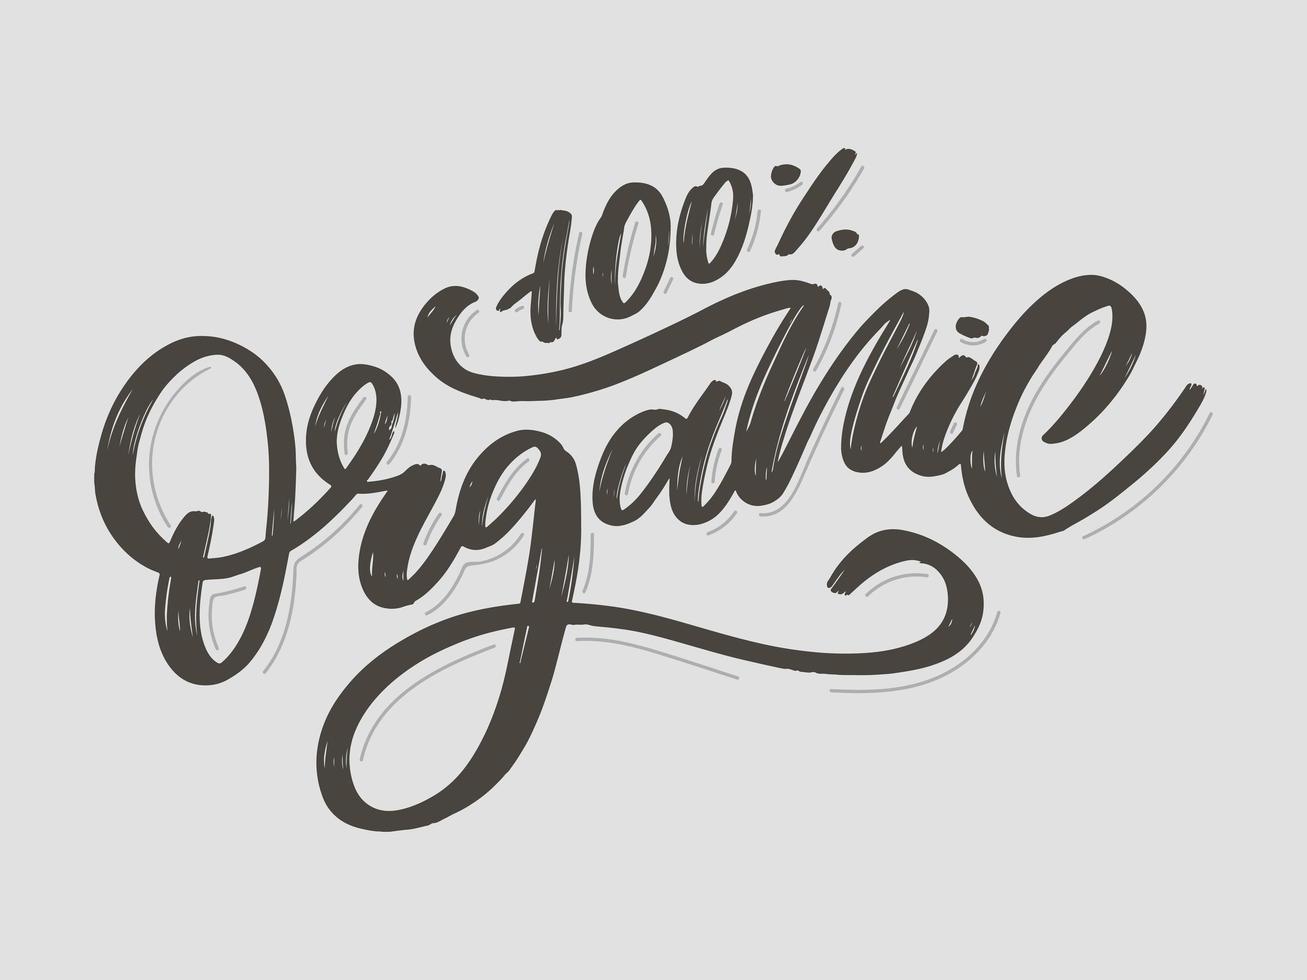 scritte a pennello organico. parola disegnata a mano organica con foglie verdi. etichetta, modello di logo per prodotti biologici, mercati alimentari sani. vettore